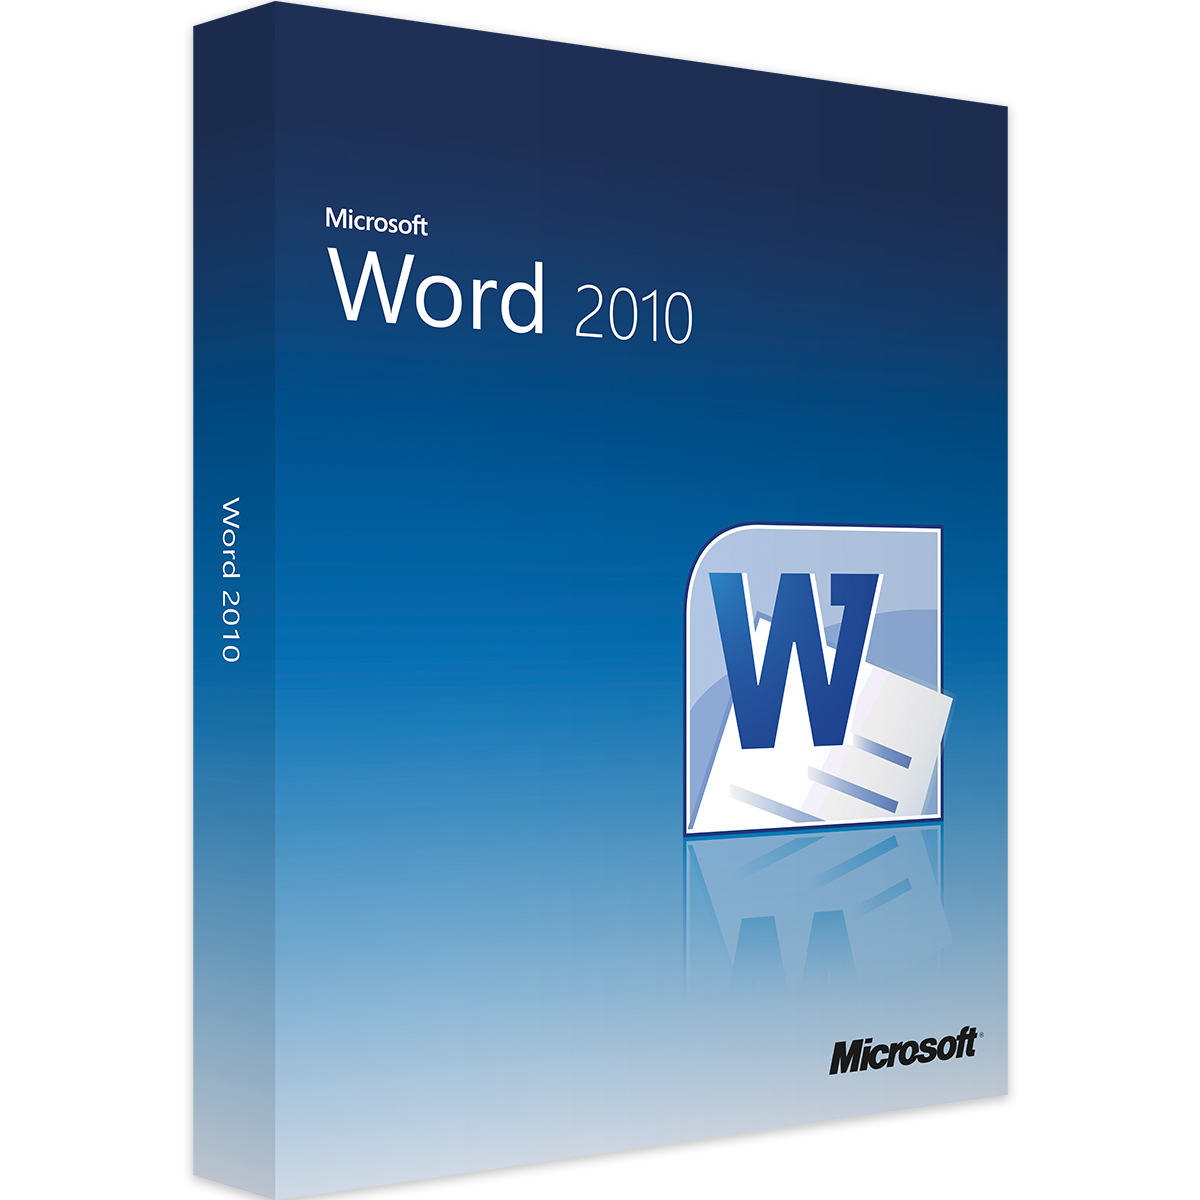 Microsoft Word 2010 Key online kaufen | Lizenzguru
